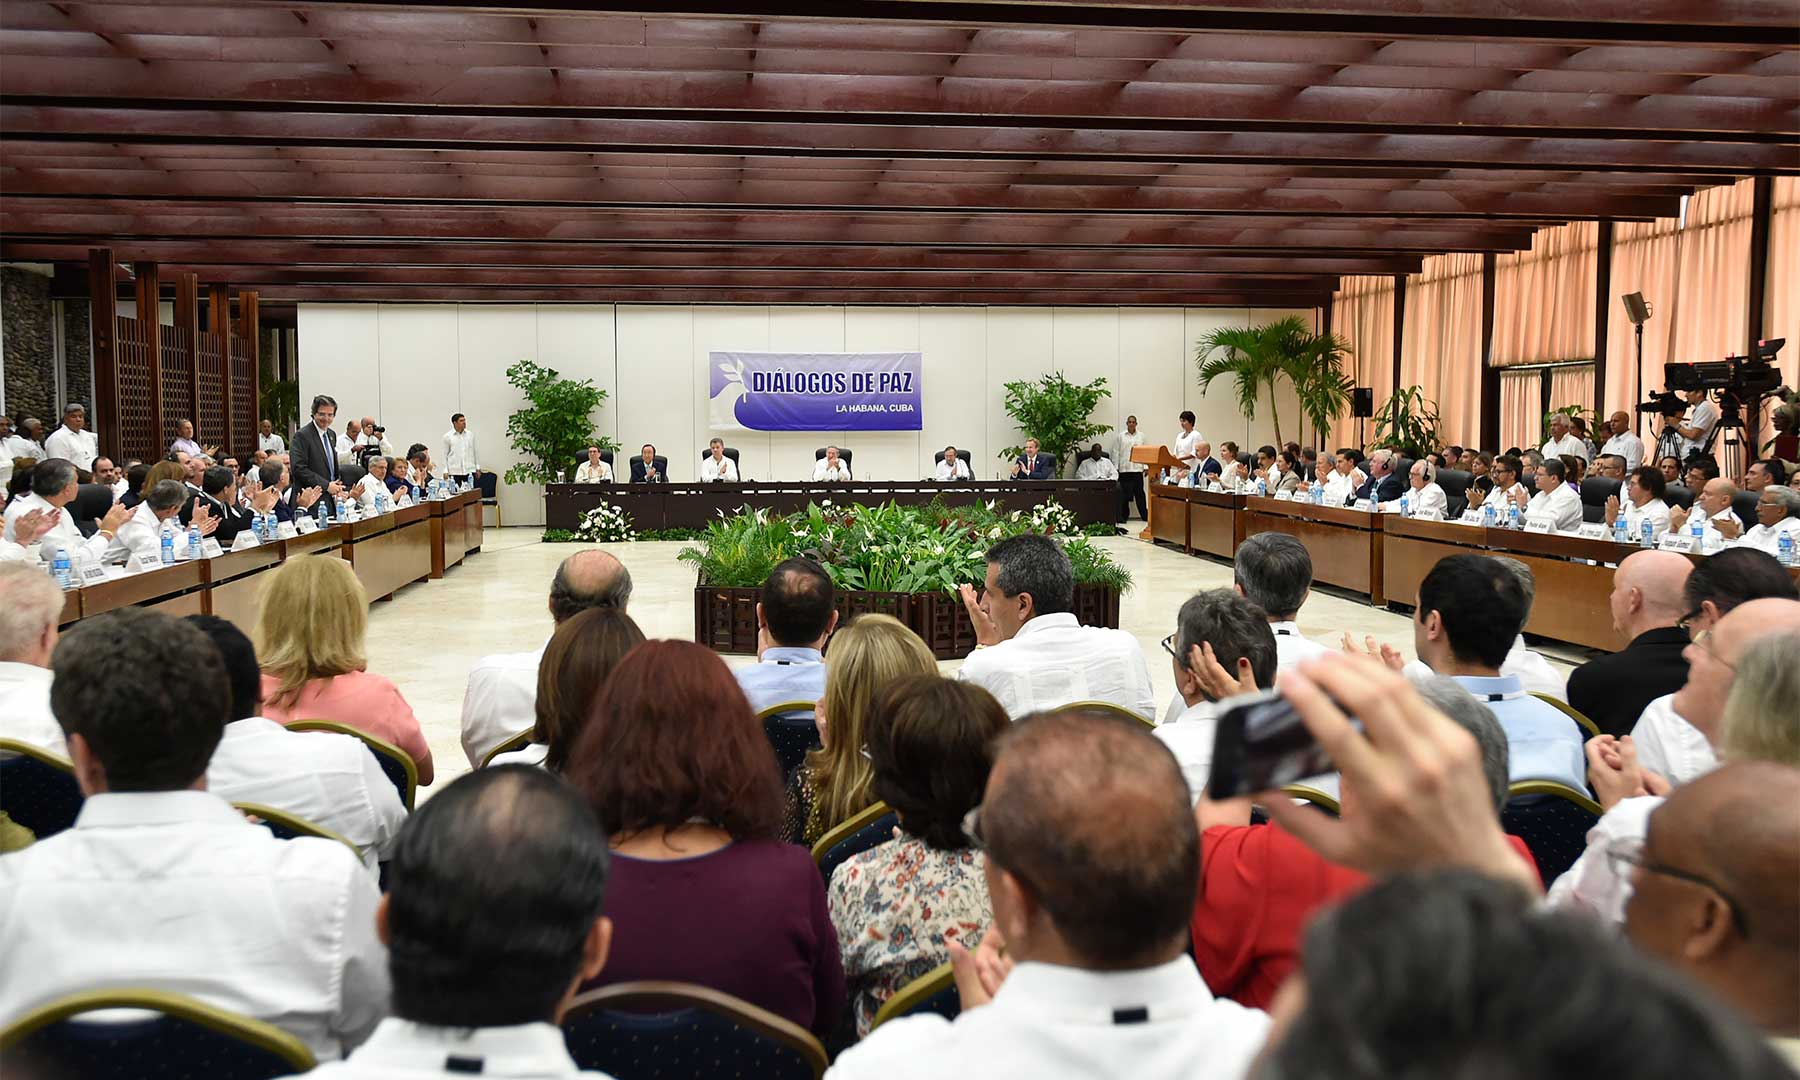 En el Salón de protocolo de El Laguito avanza el evento de la firma del acuerdo para el cese al fuego y de hostilidades bilateral y definitivo y la dejación de armas, entre el Gobierno y las Farc.